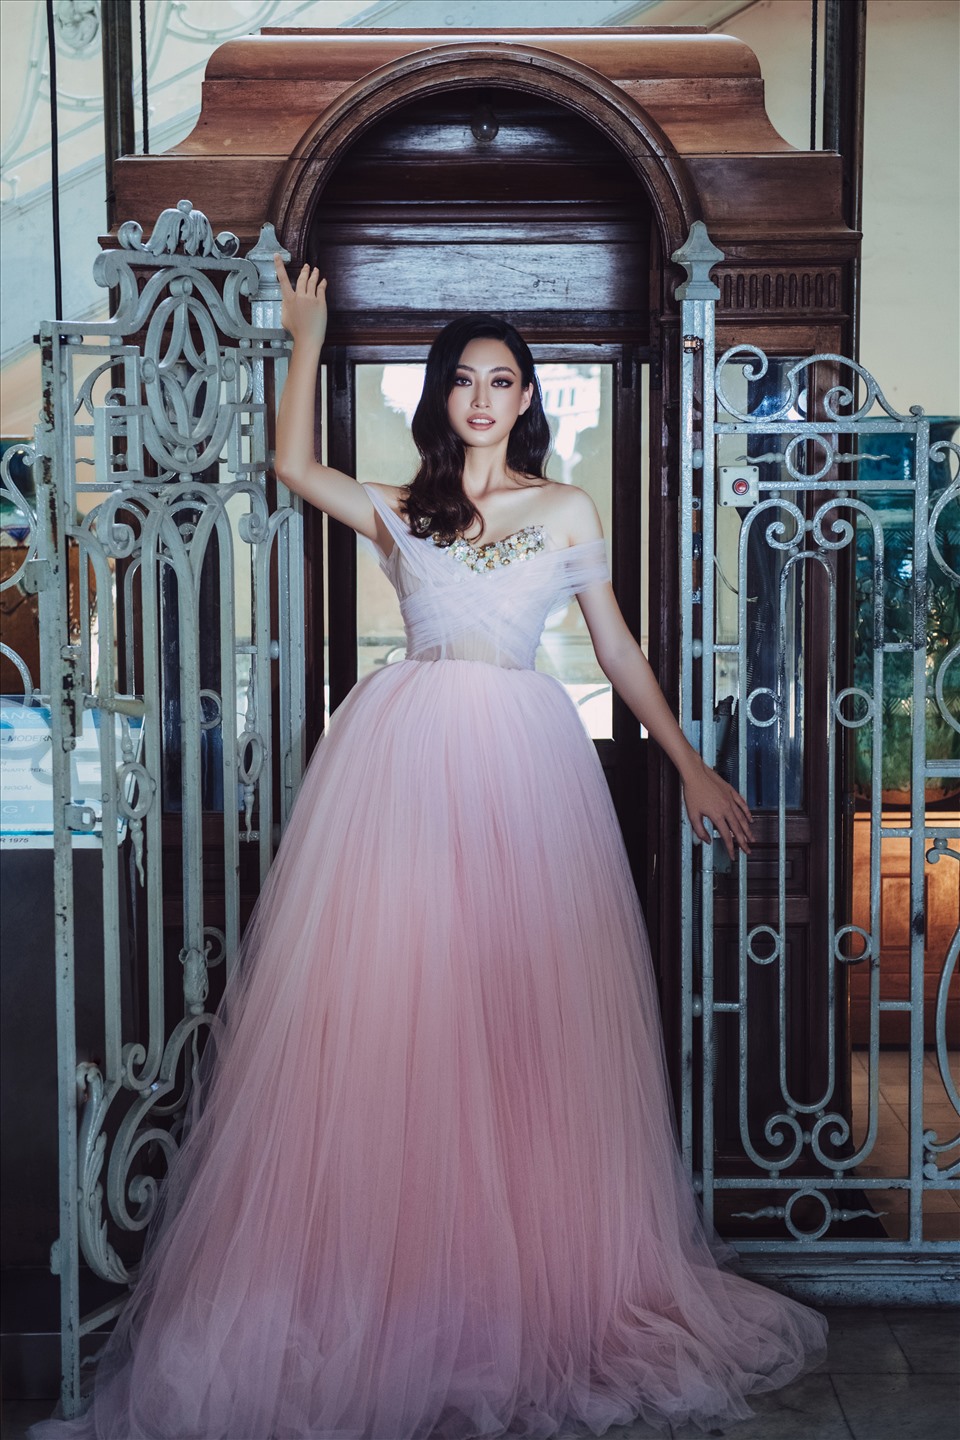 Lương Thuỳ Linh sinh năm 2000, tại Cao Bằng. Cô xuất sắc giành ngôi vị hoa hậu tại cuộc thi Miss World Việt Nam 2019.